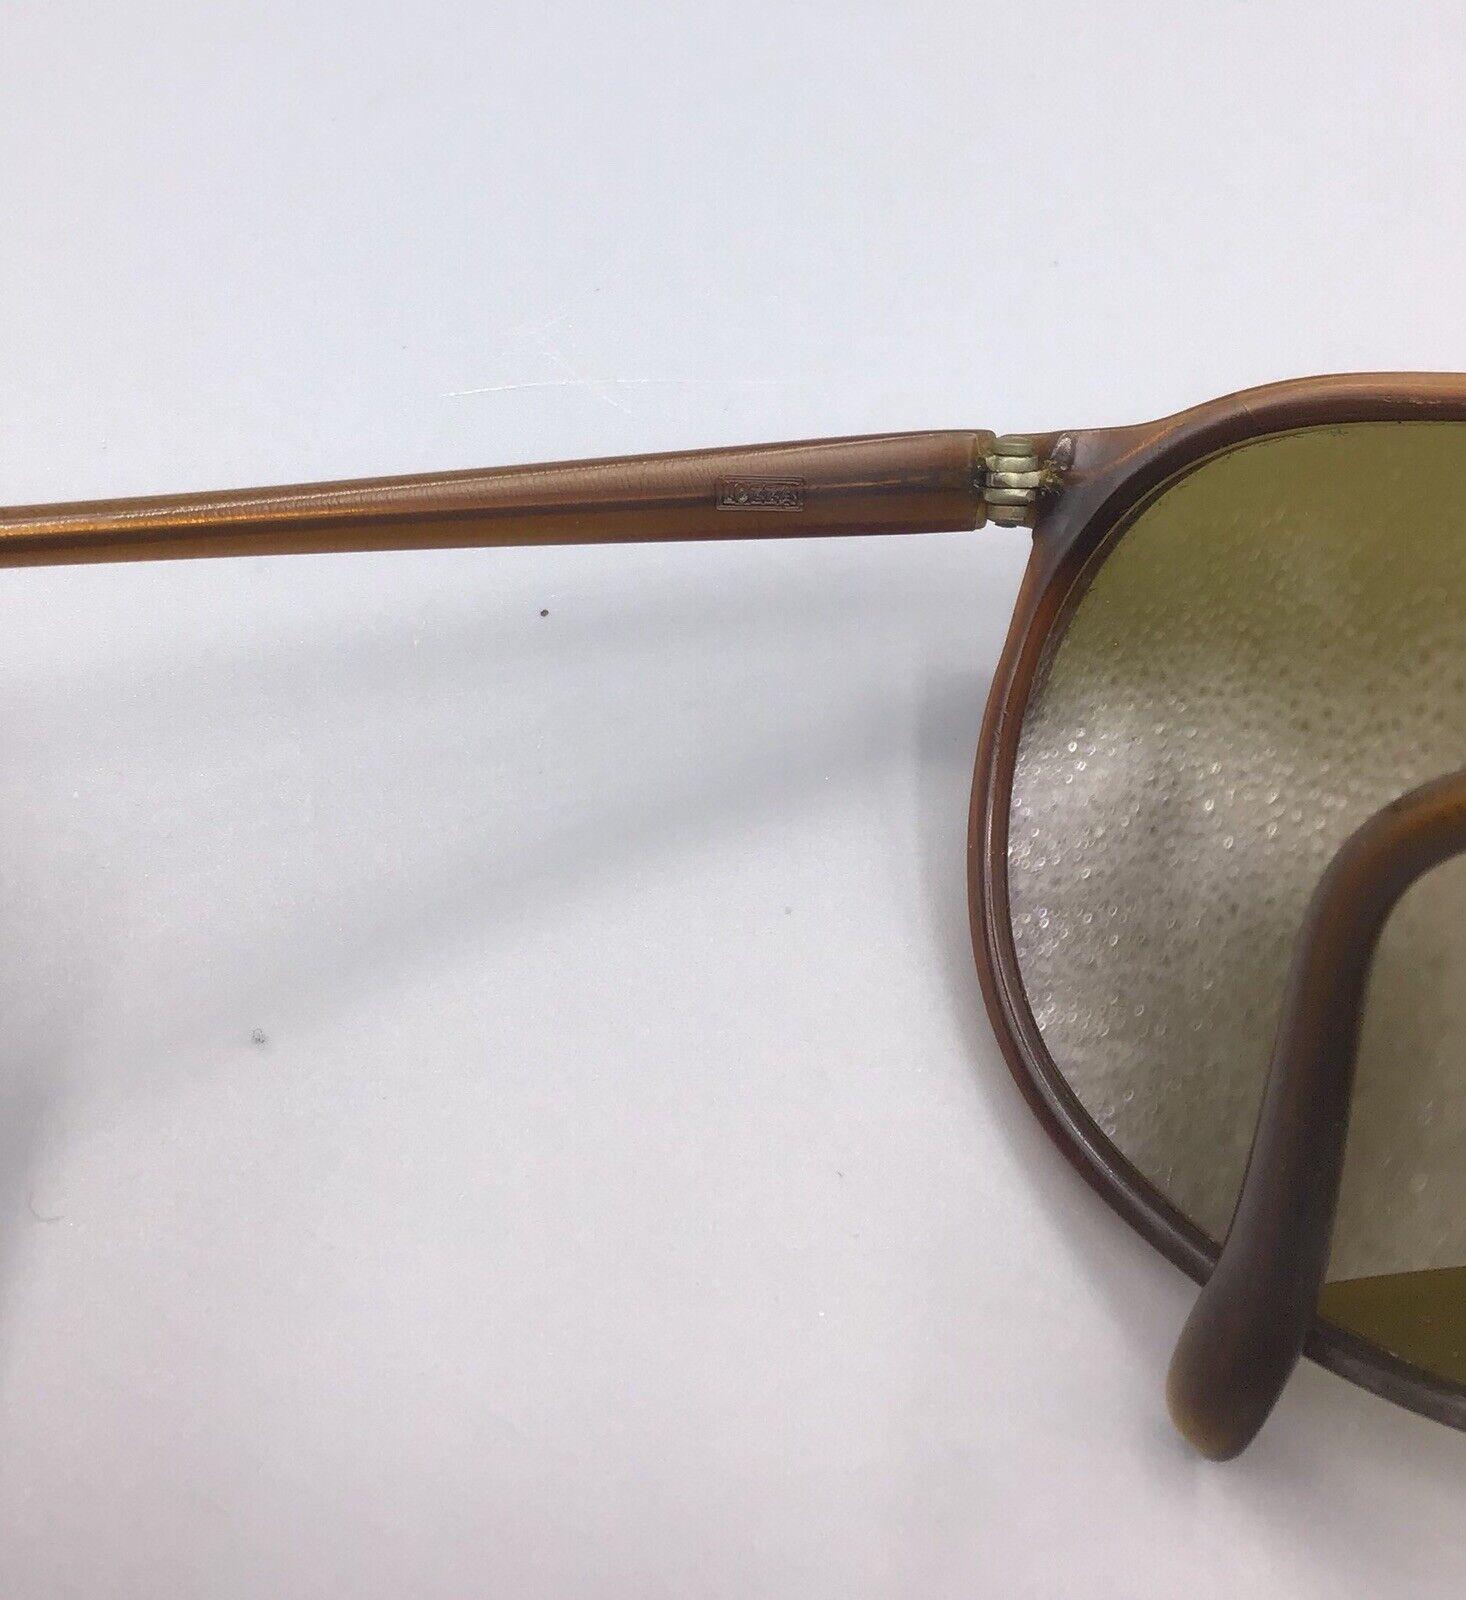 Sunglasses vintage used Lozza occhiale da sole sonnenbrillen lunettes de soleil